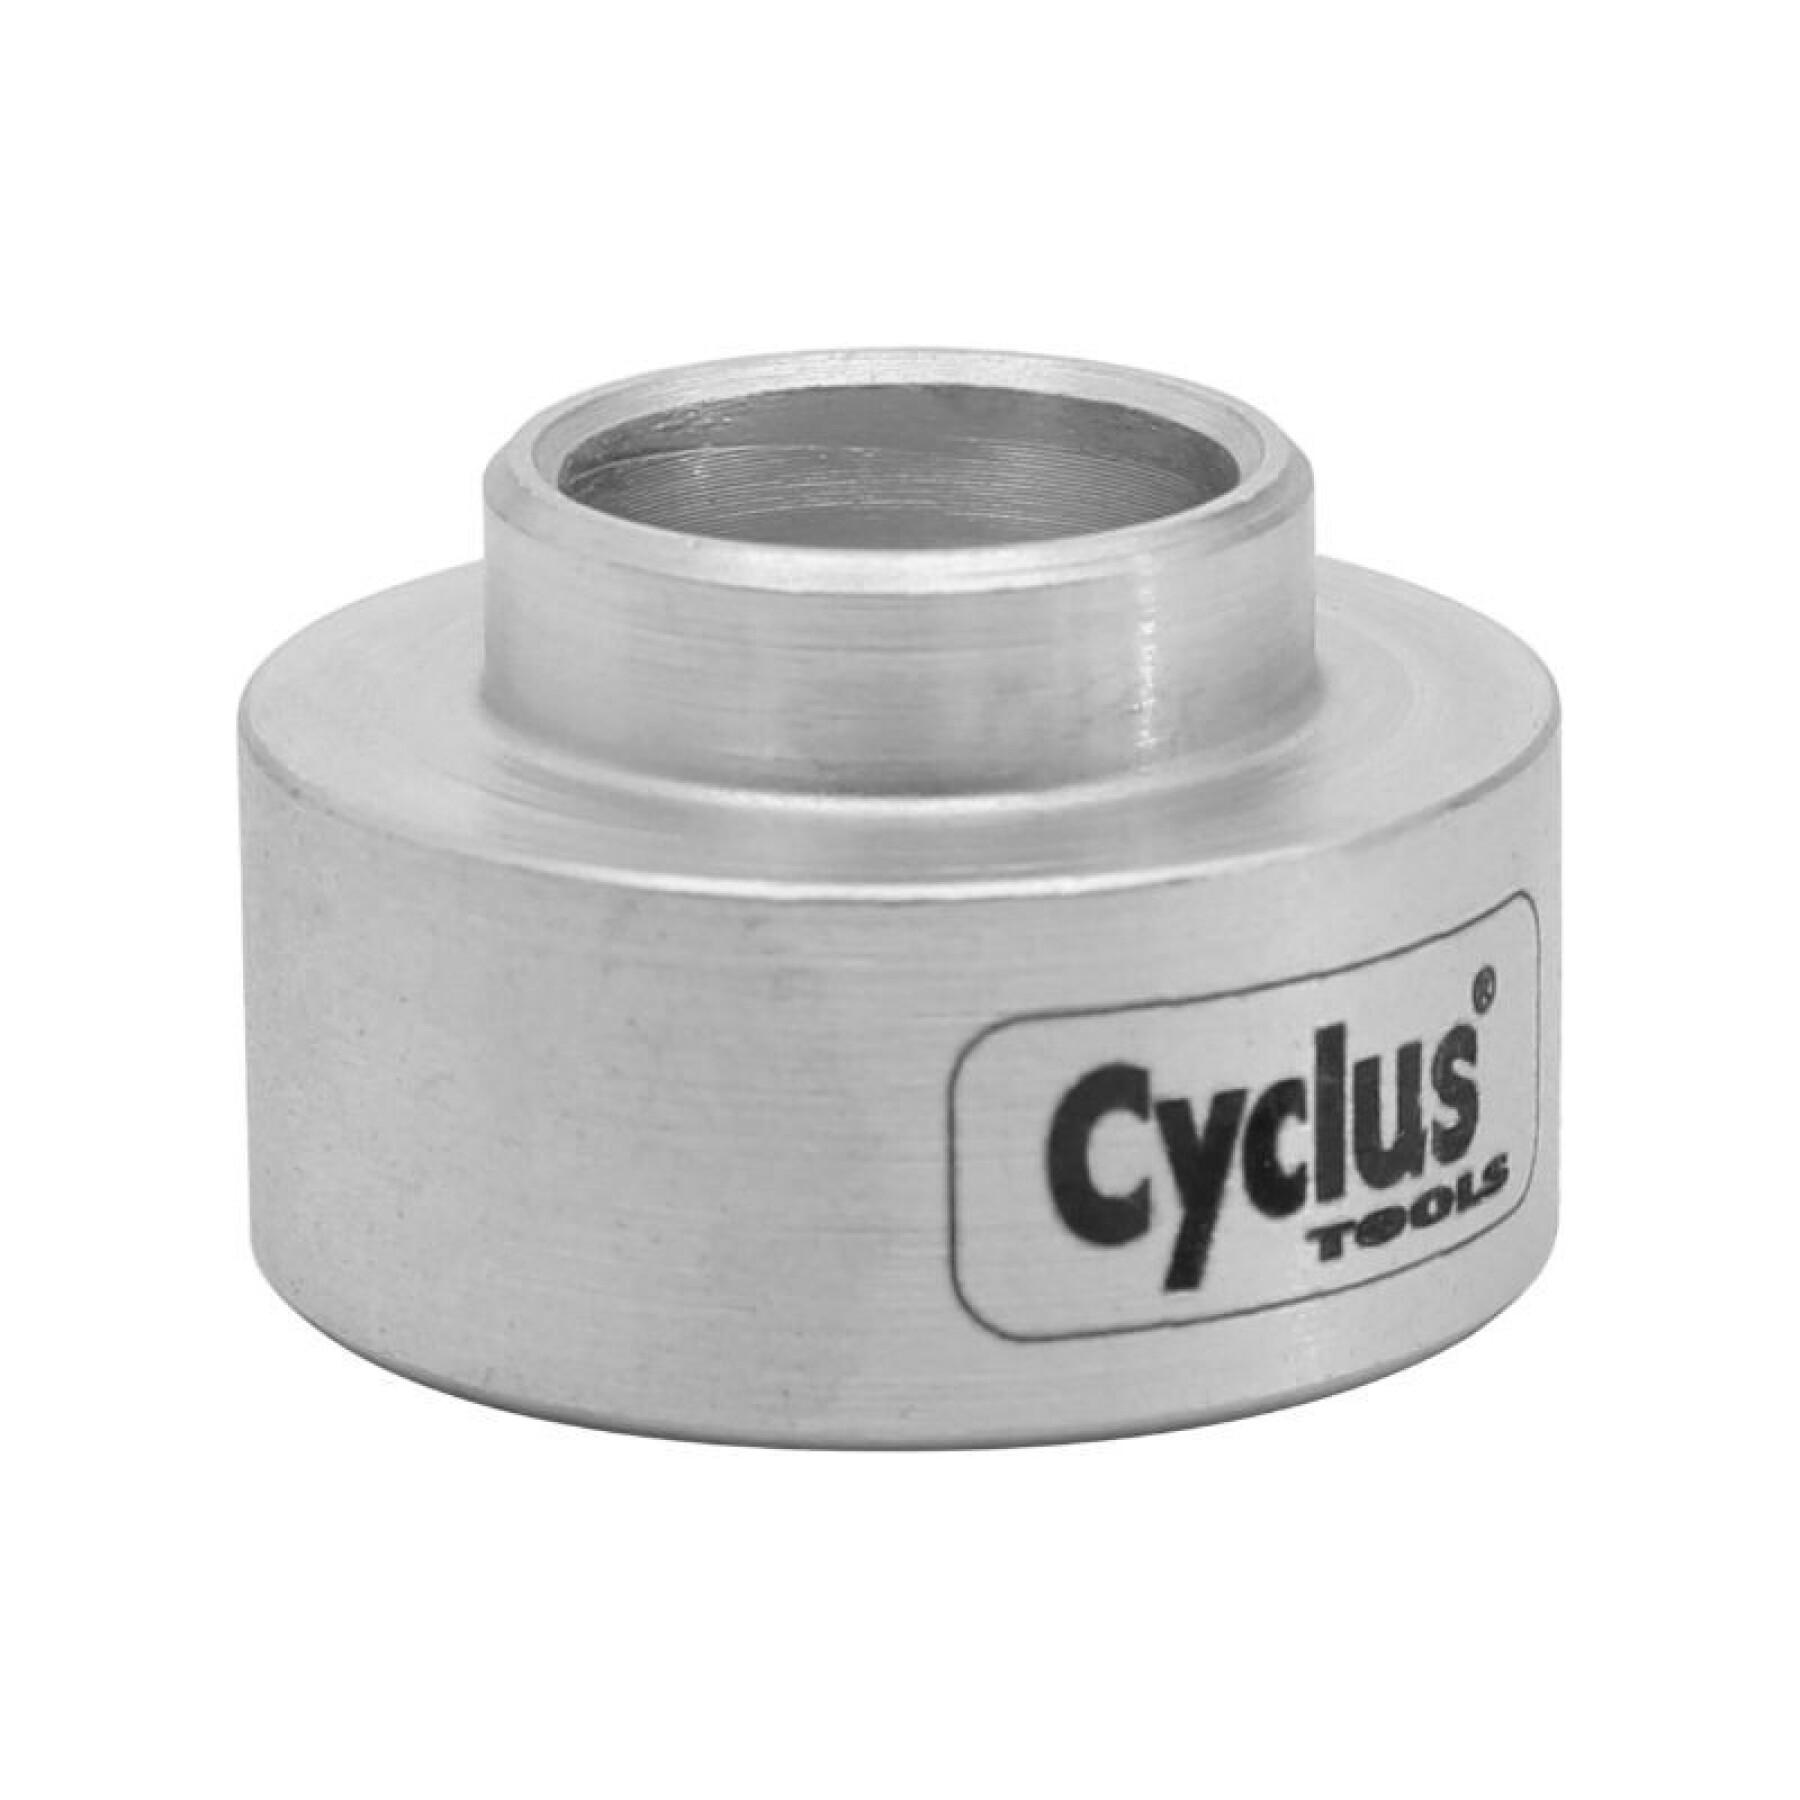 Outil pro support roulement à utiliser avec le presse roulement Cyclus ref 180126